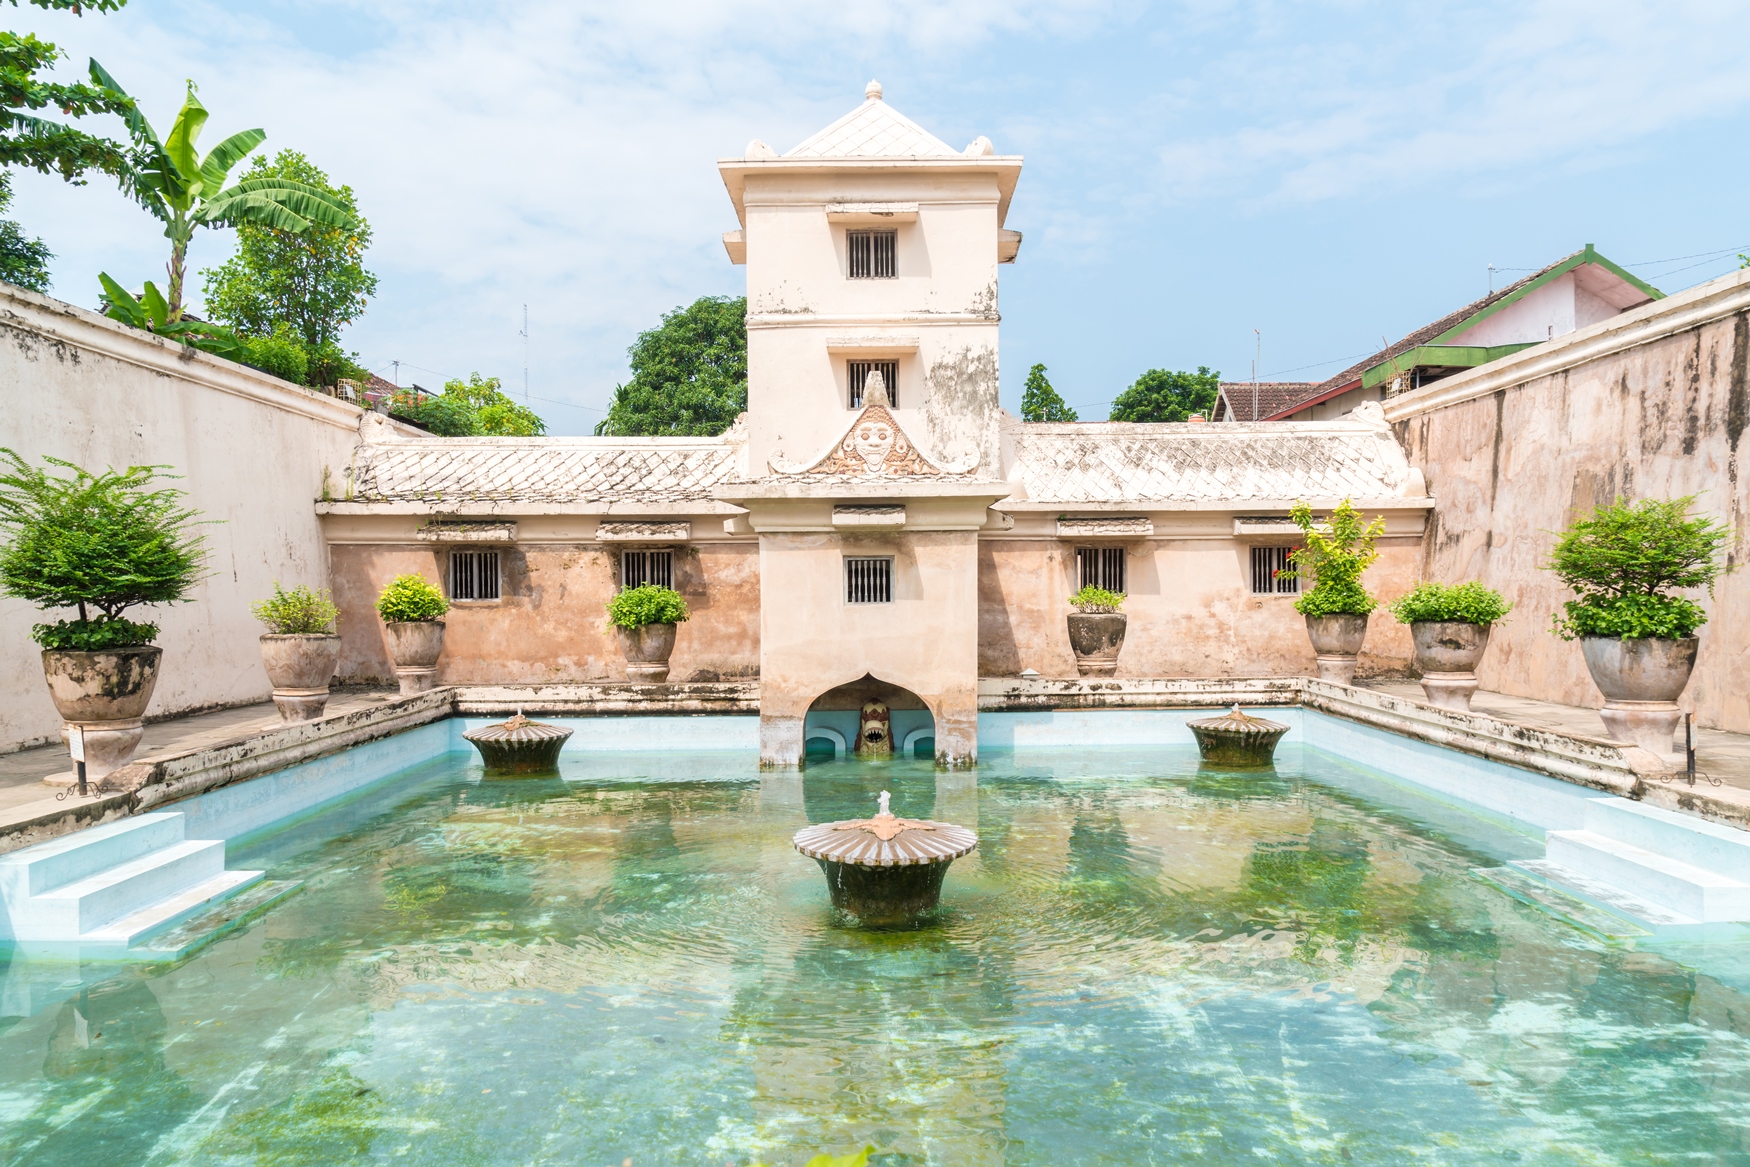 Taman Sari Water Palace, Java, Indonesia